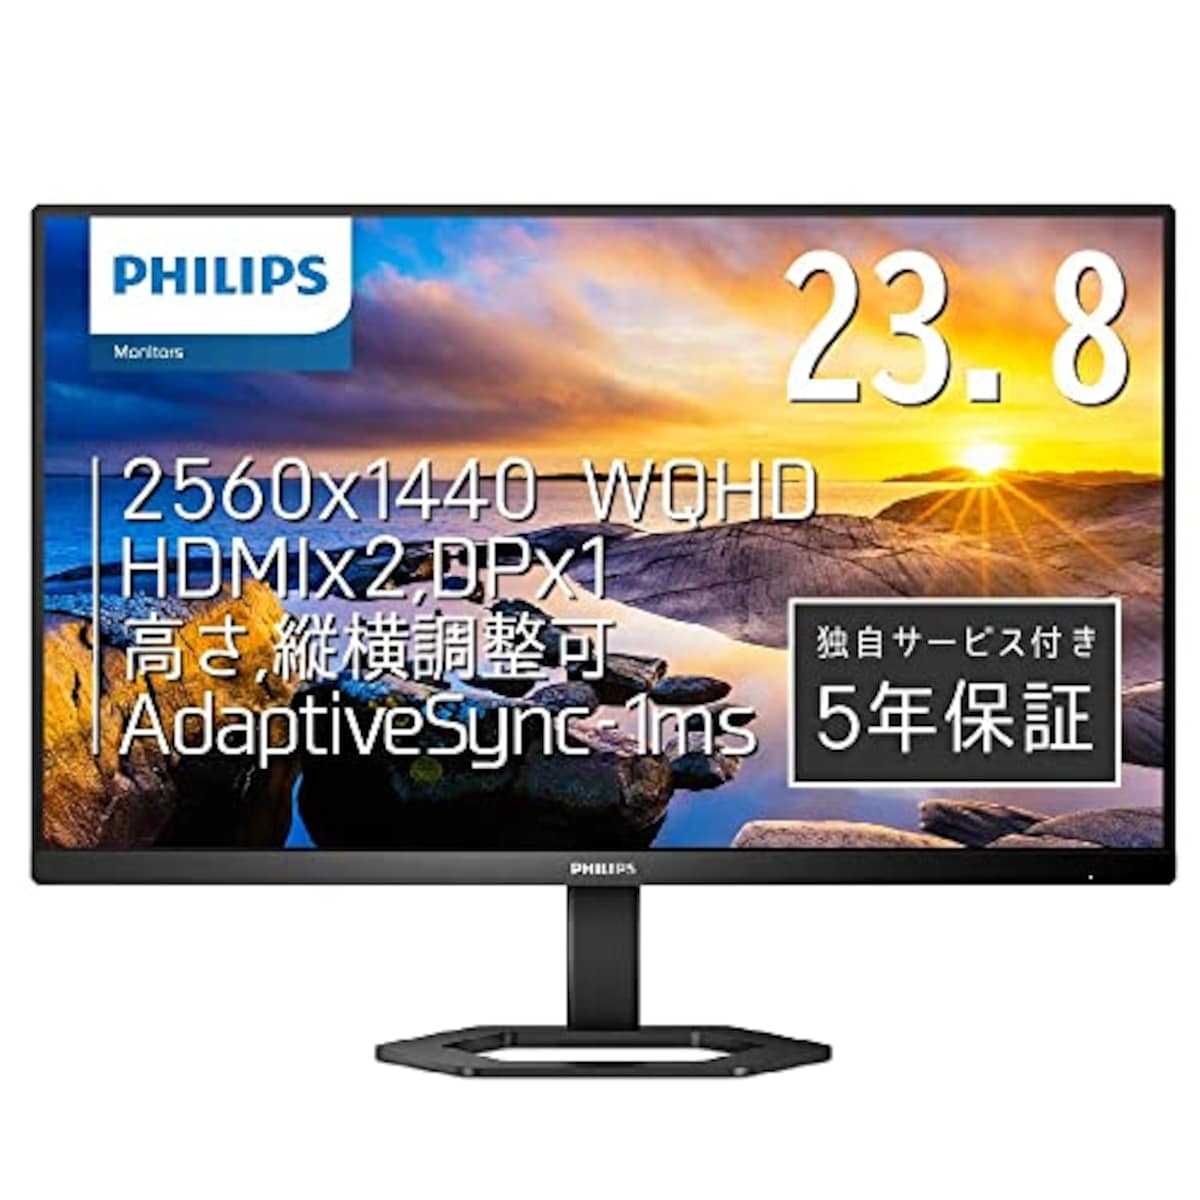 PHILIPS 液晶ディスプレイ PCモニター 24E1N5500E/11 (23.8インチ/5年保証/WQHD/IPS/HDMI,Display Port/高さ調整/チルト/ピボット/フレームレス/Adaptive Sync/ちらつき防止/ブルーライト軽減)画像